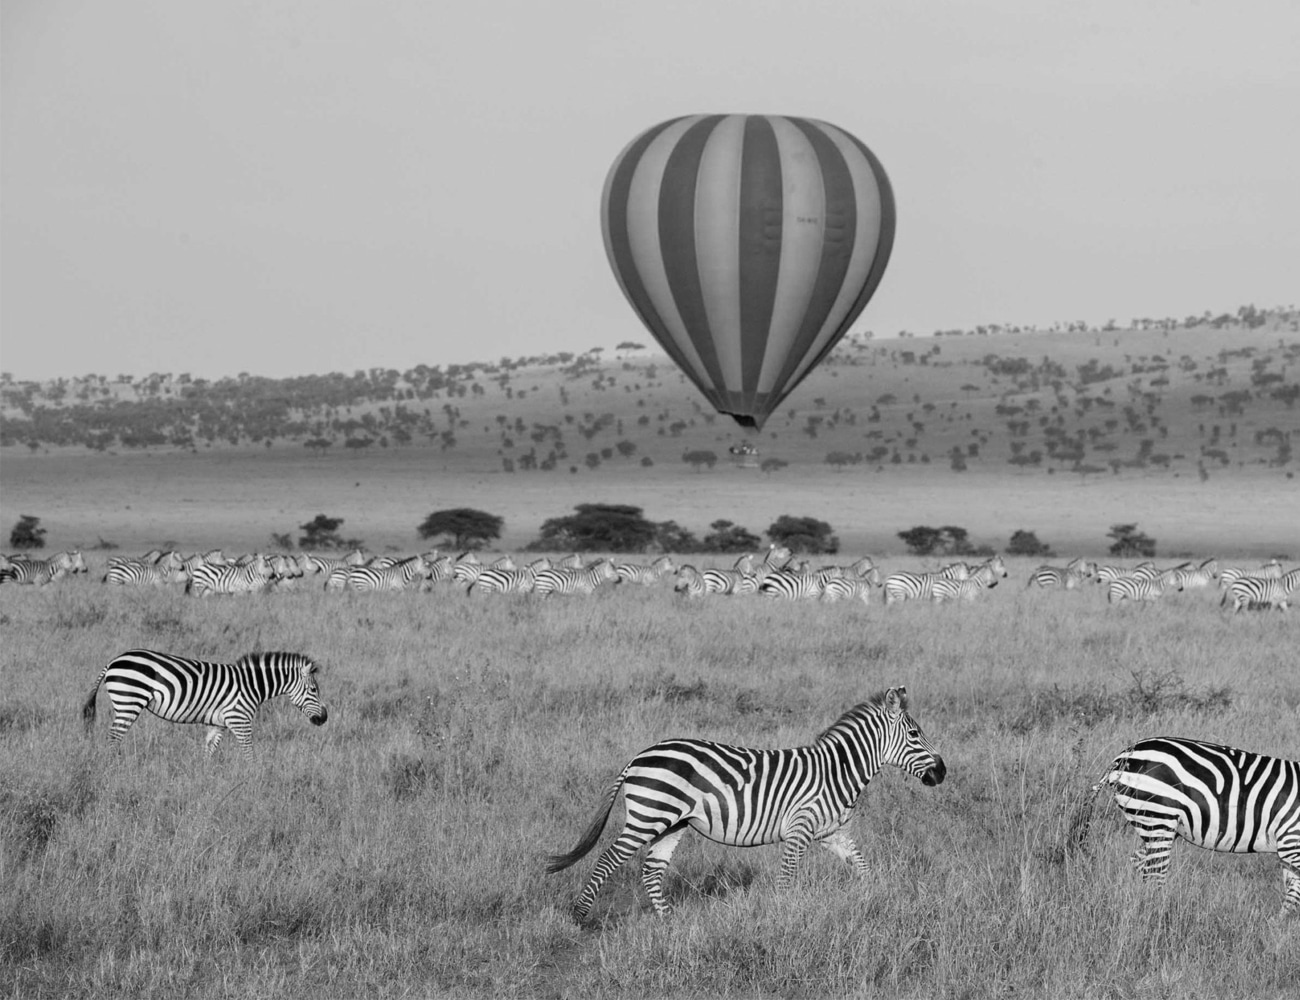 Hot Air Balloon Over a Safari in Tanzania